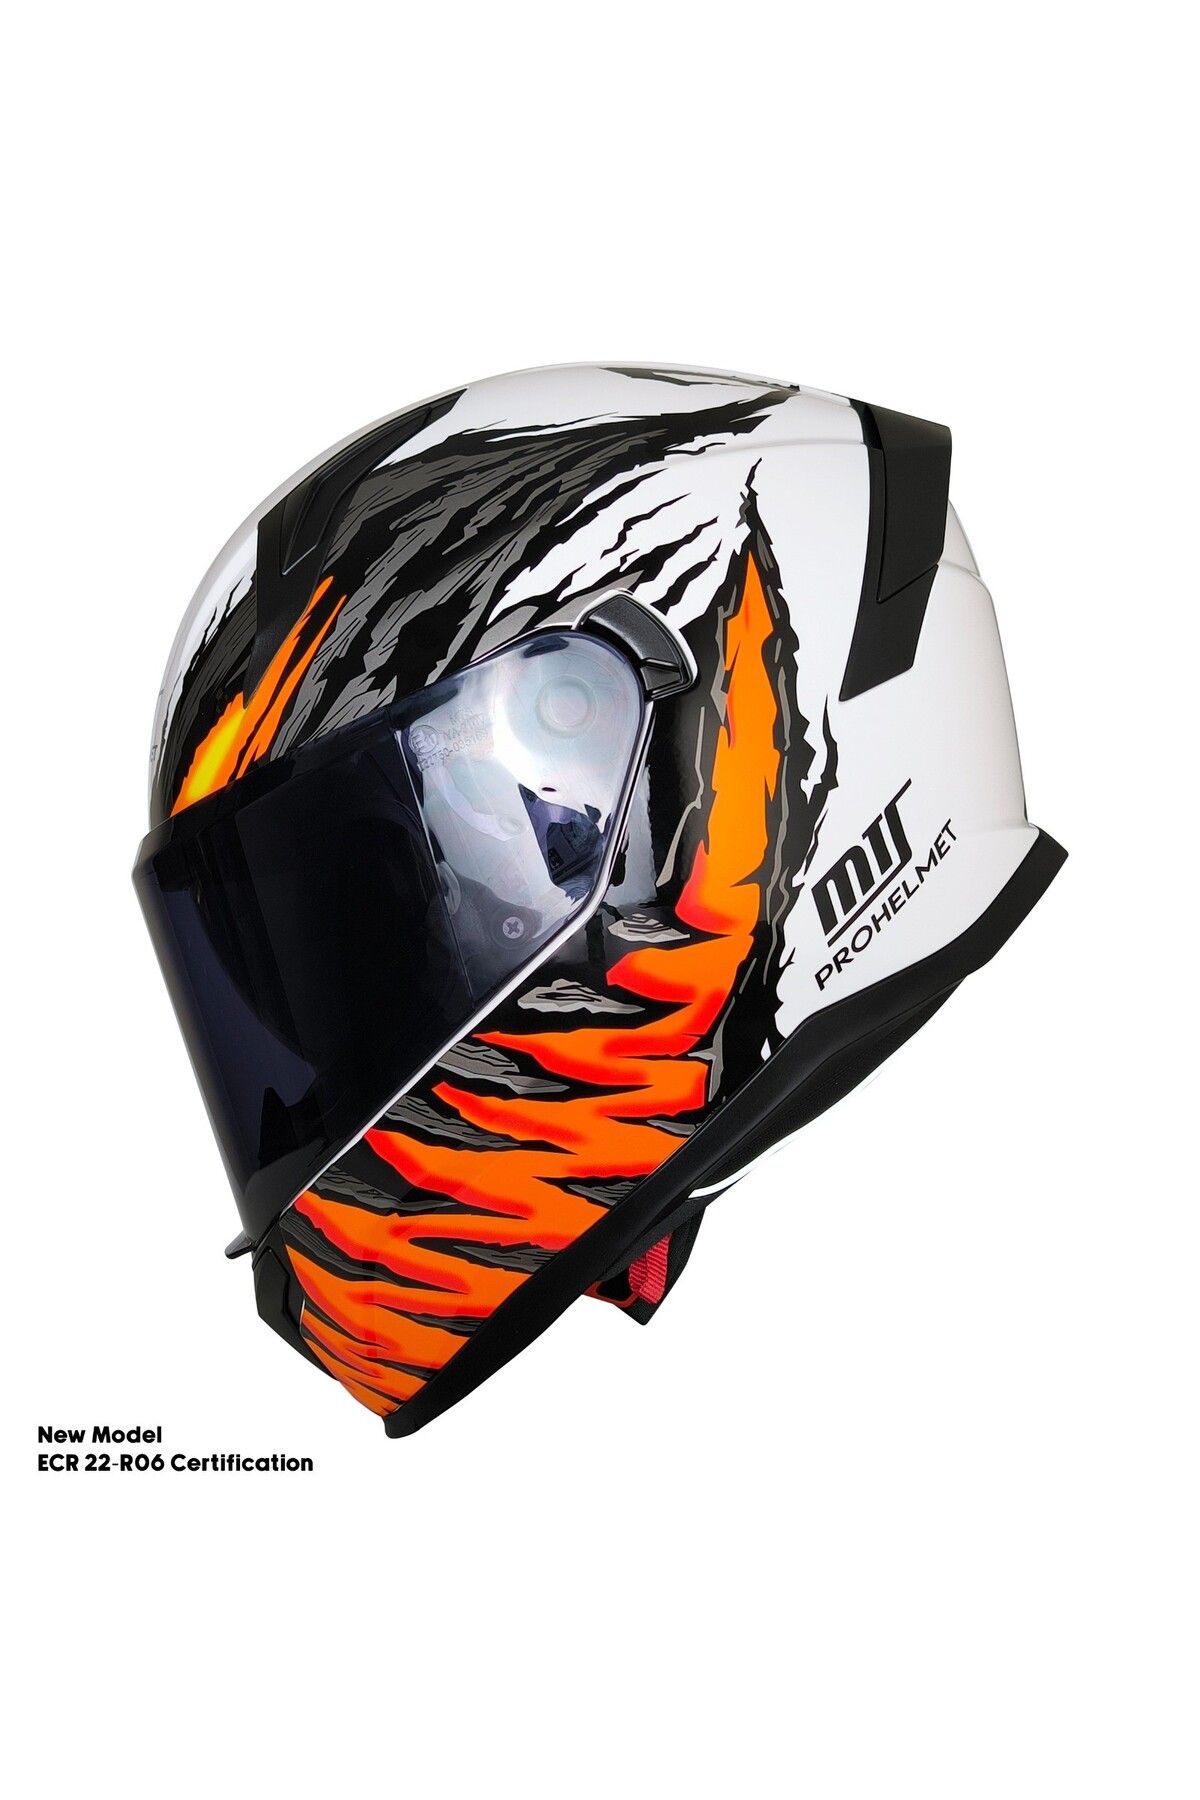 MOTOANL Motosiklet Kask Ece 22.R06 Sertifikalı Güneş Vizörlü Fiber Kask Full Face Motor Kaskı Yeni Sezon